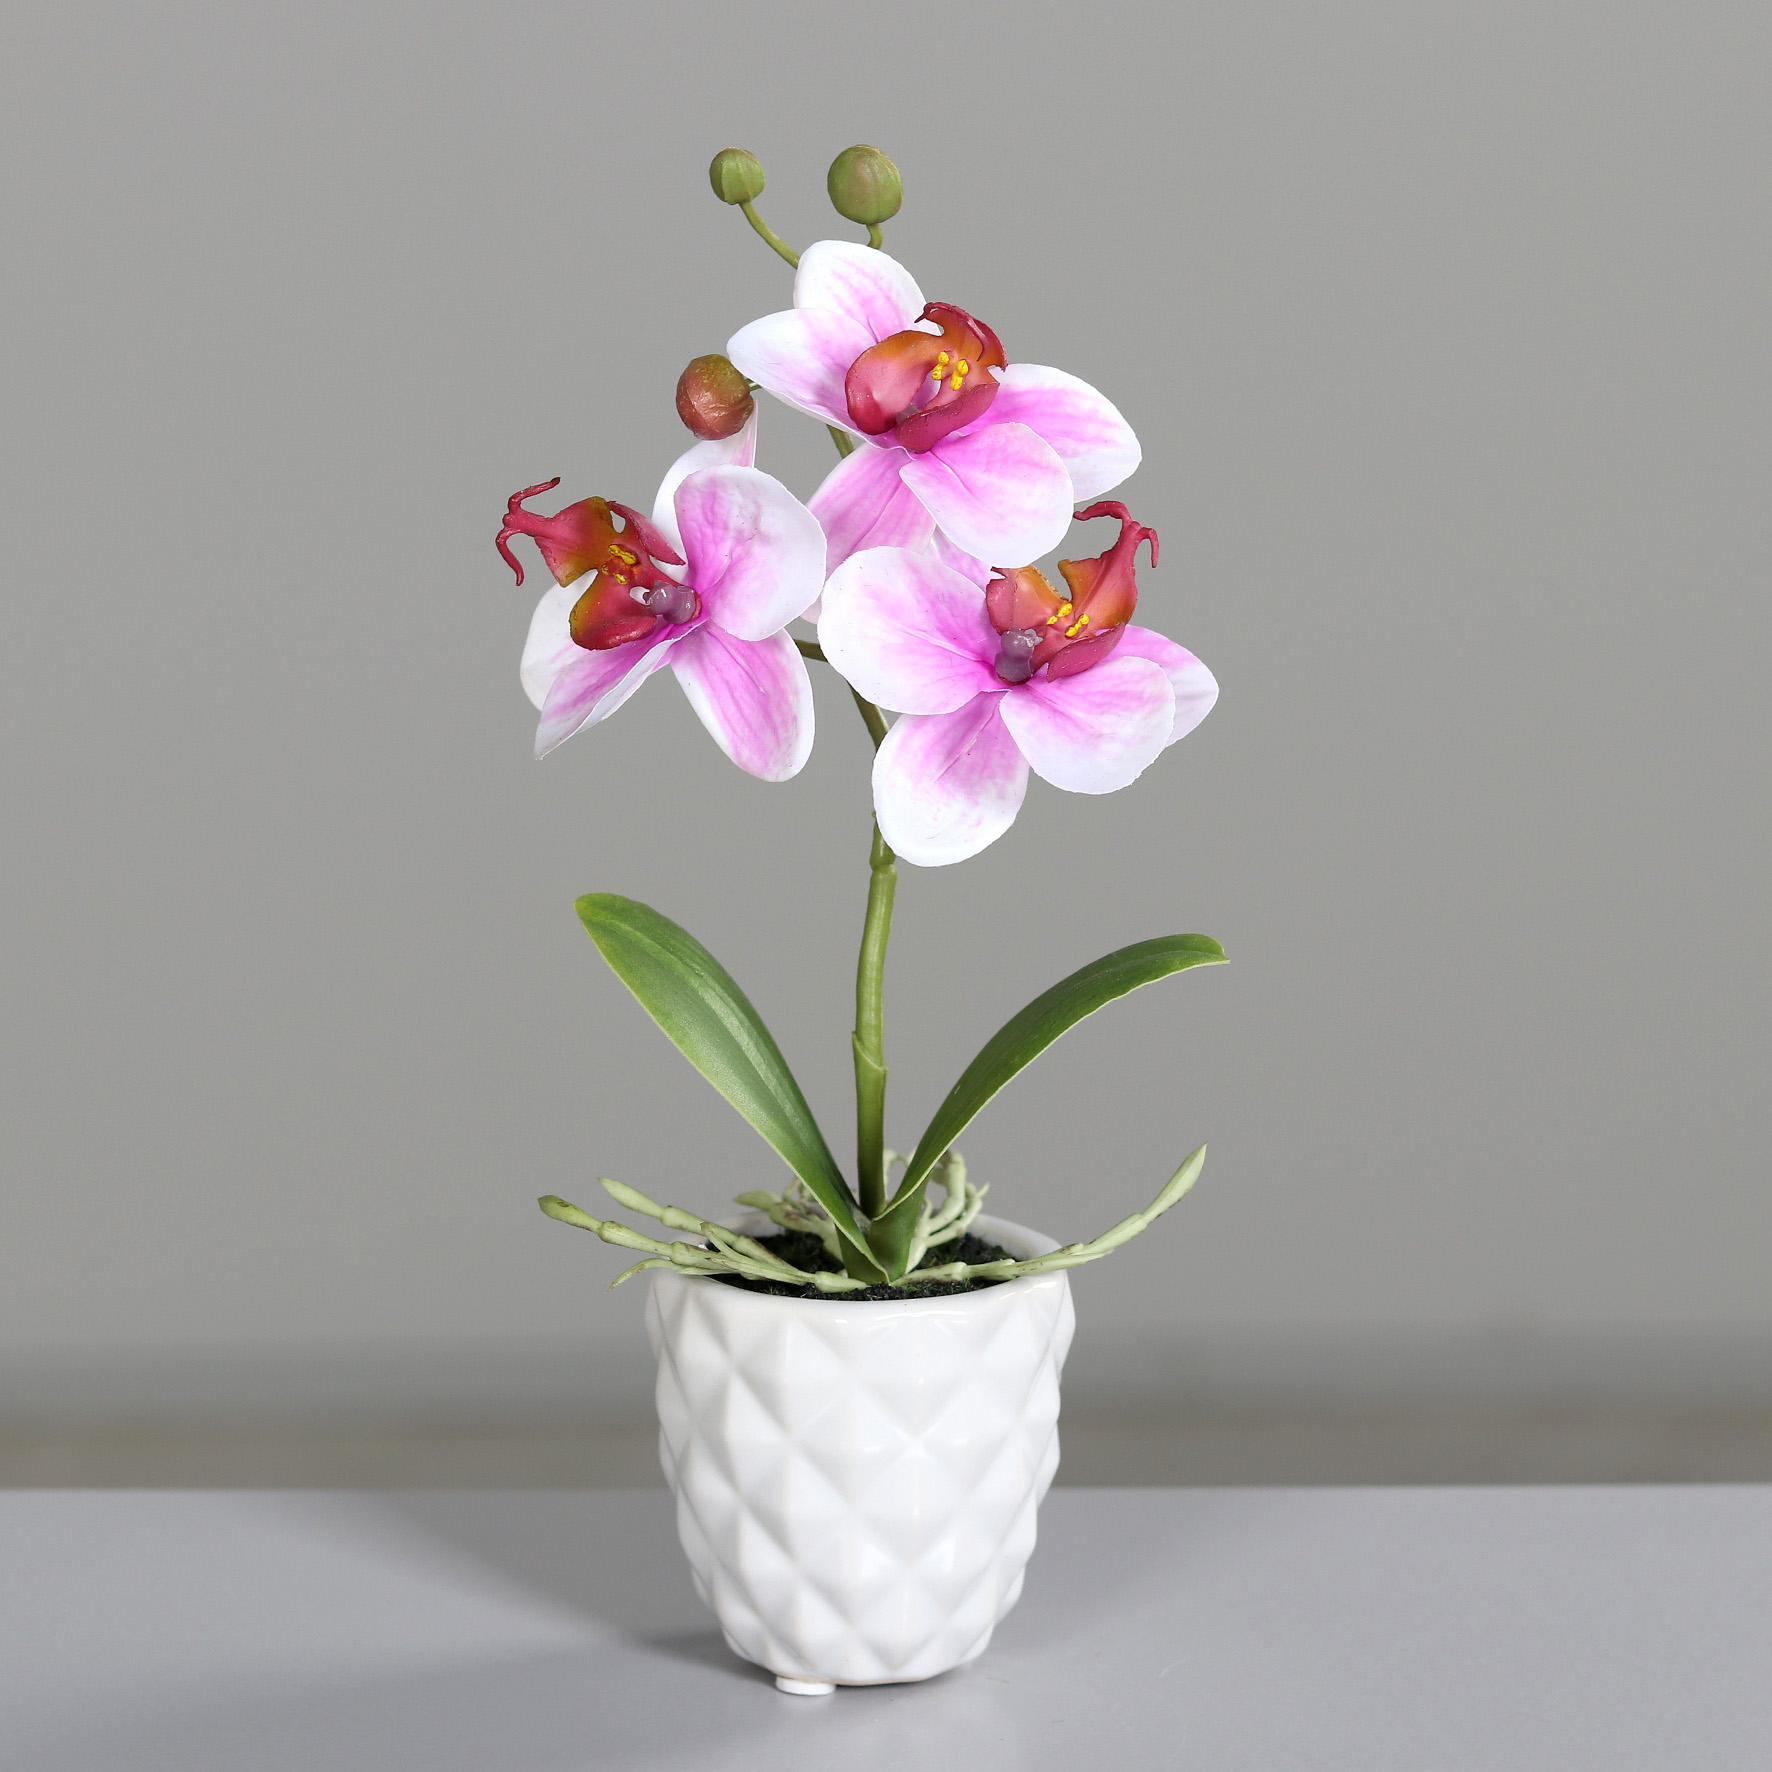 Mini Orchidee Real Touch 24cm pink-weiß im weißen Keramiktopf DP künstliche Blumen Kunstpflanzen